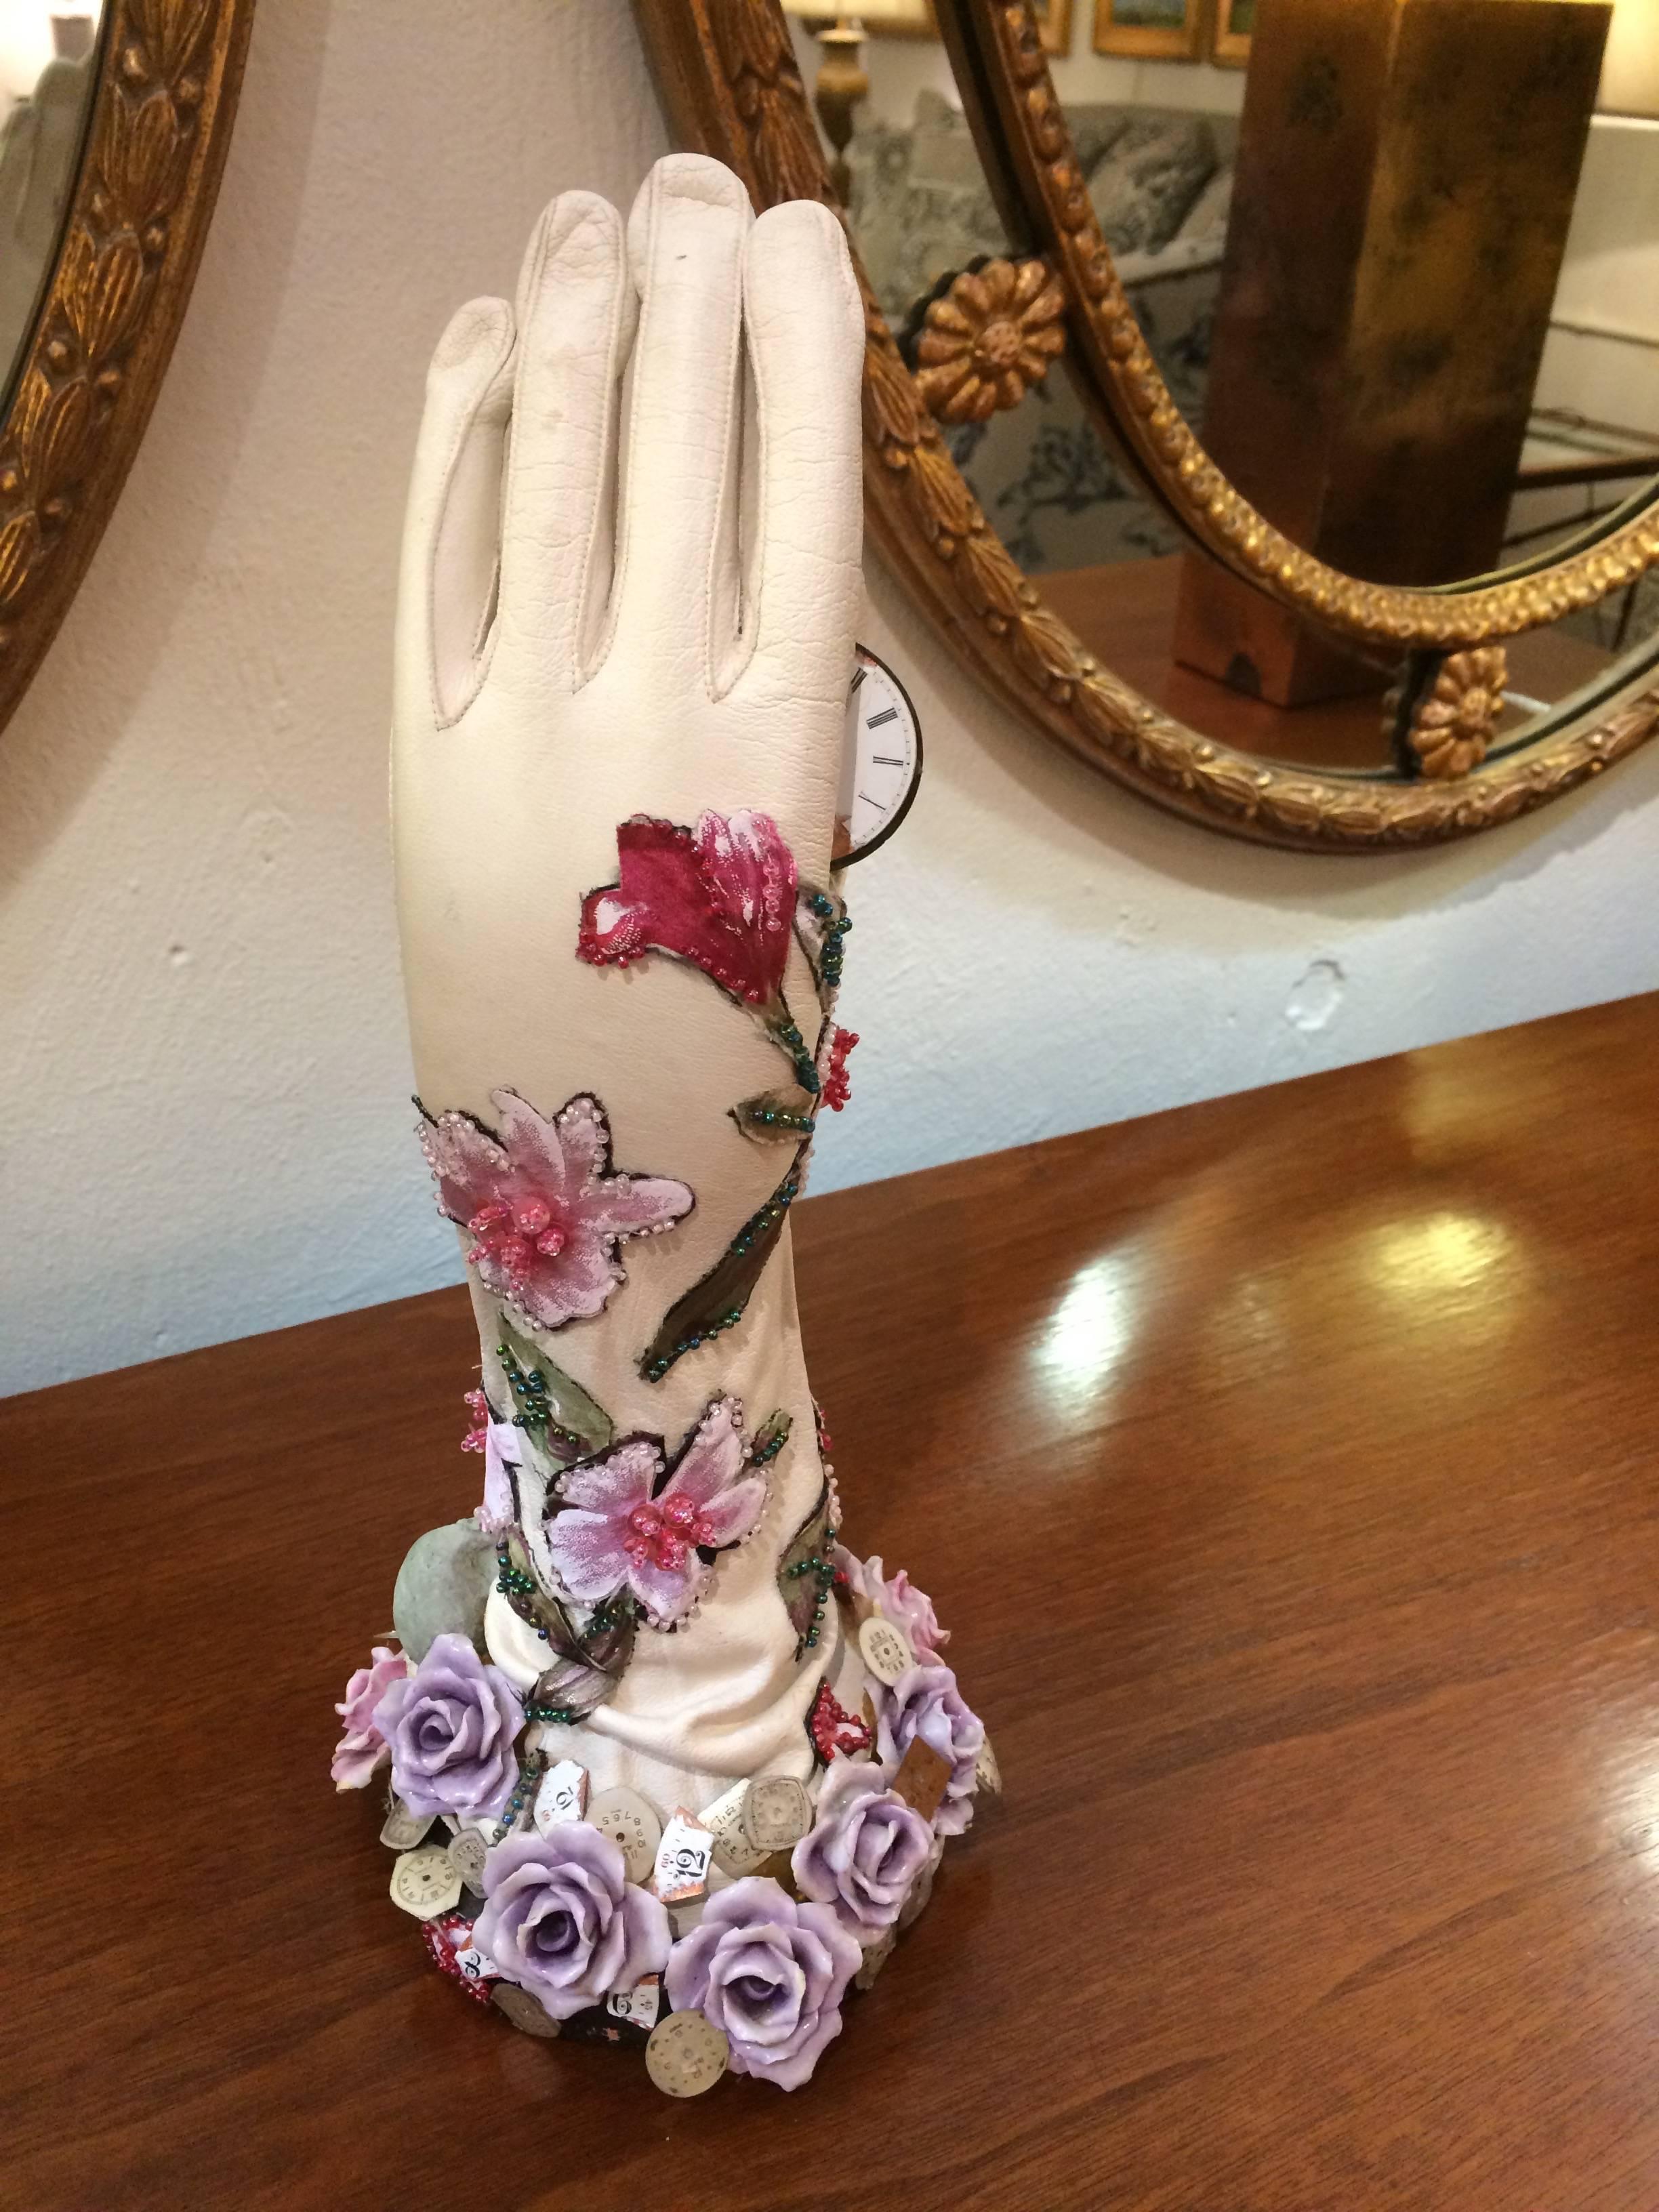 Sculpture mixte d'assemblage réfléchi d'une main gantée de cuir embellie de fleurs en porcelaine, d'ornements floraux en perles et d'un crâne, tenant de manière provocante un cadran d'horloge rose suggérant le passage du temps.